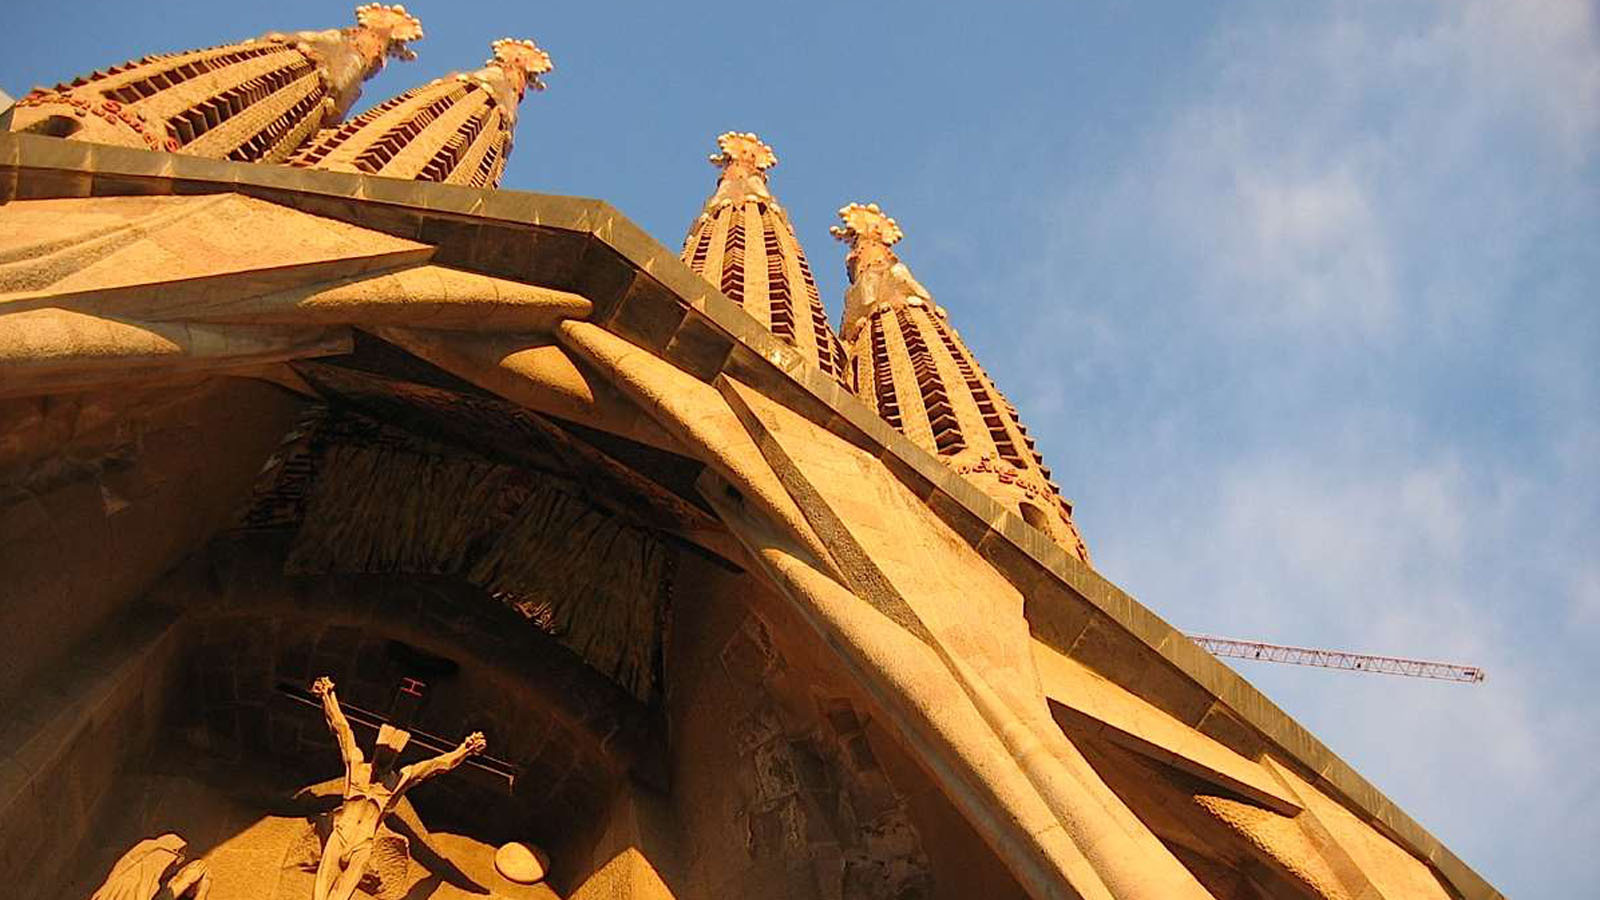 Tour Montserrat e cantine Codorniu + Sagrada Familia (offerta combinata)